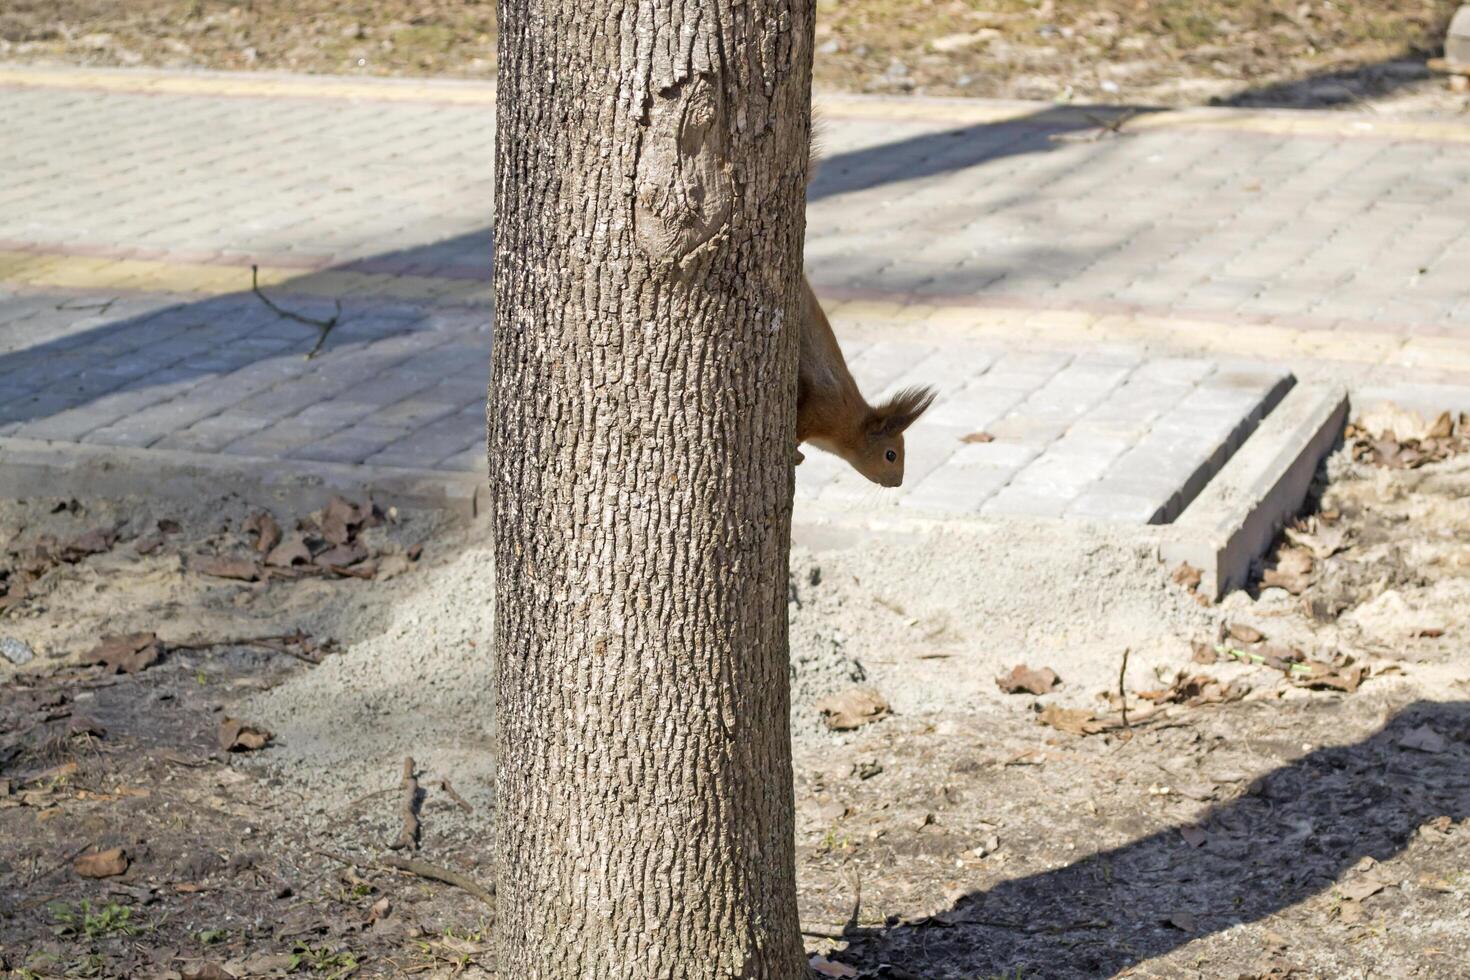 grappig rood eekhoorn Aan kofferbak van boom. foto